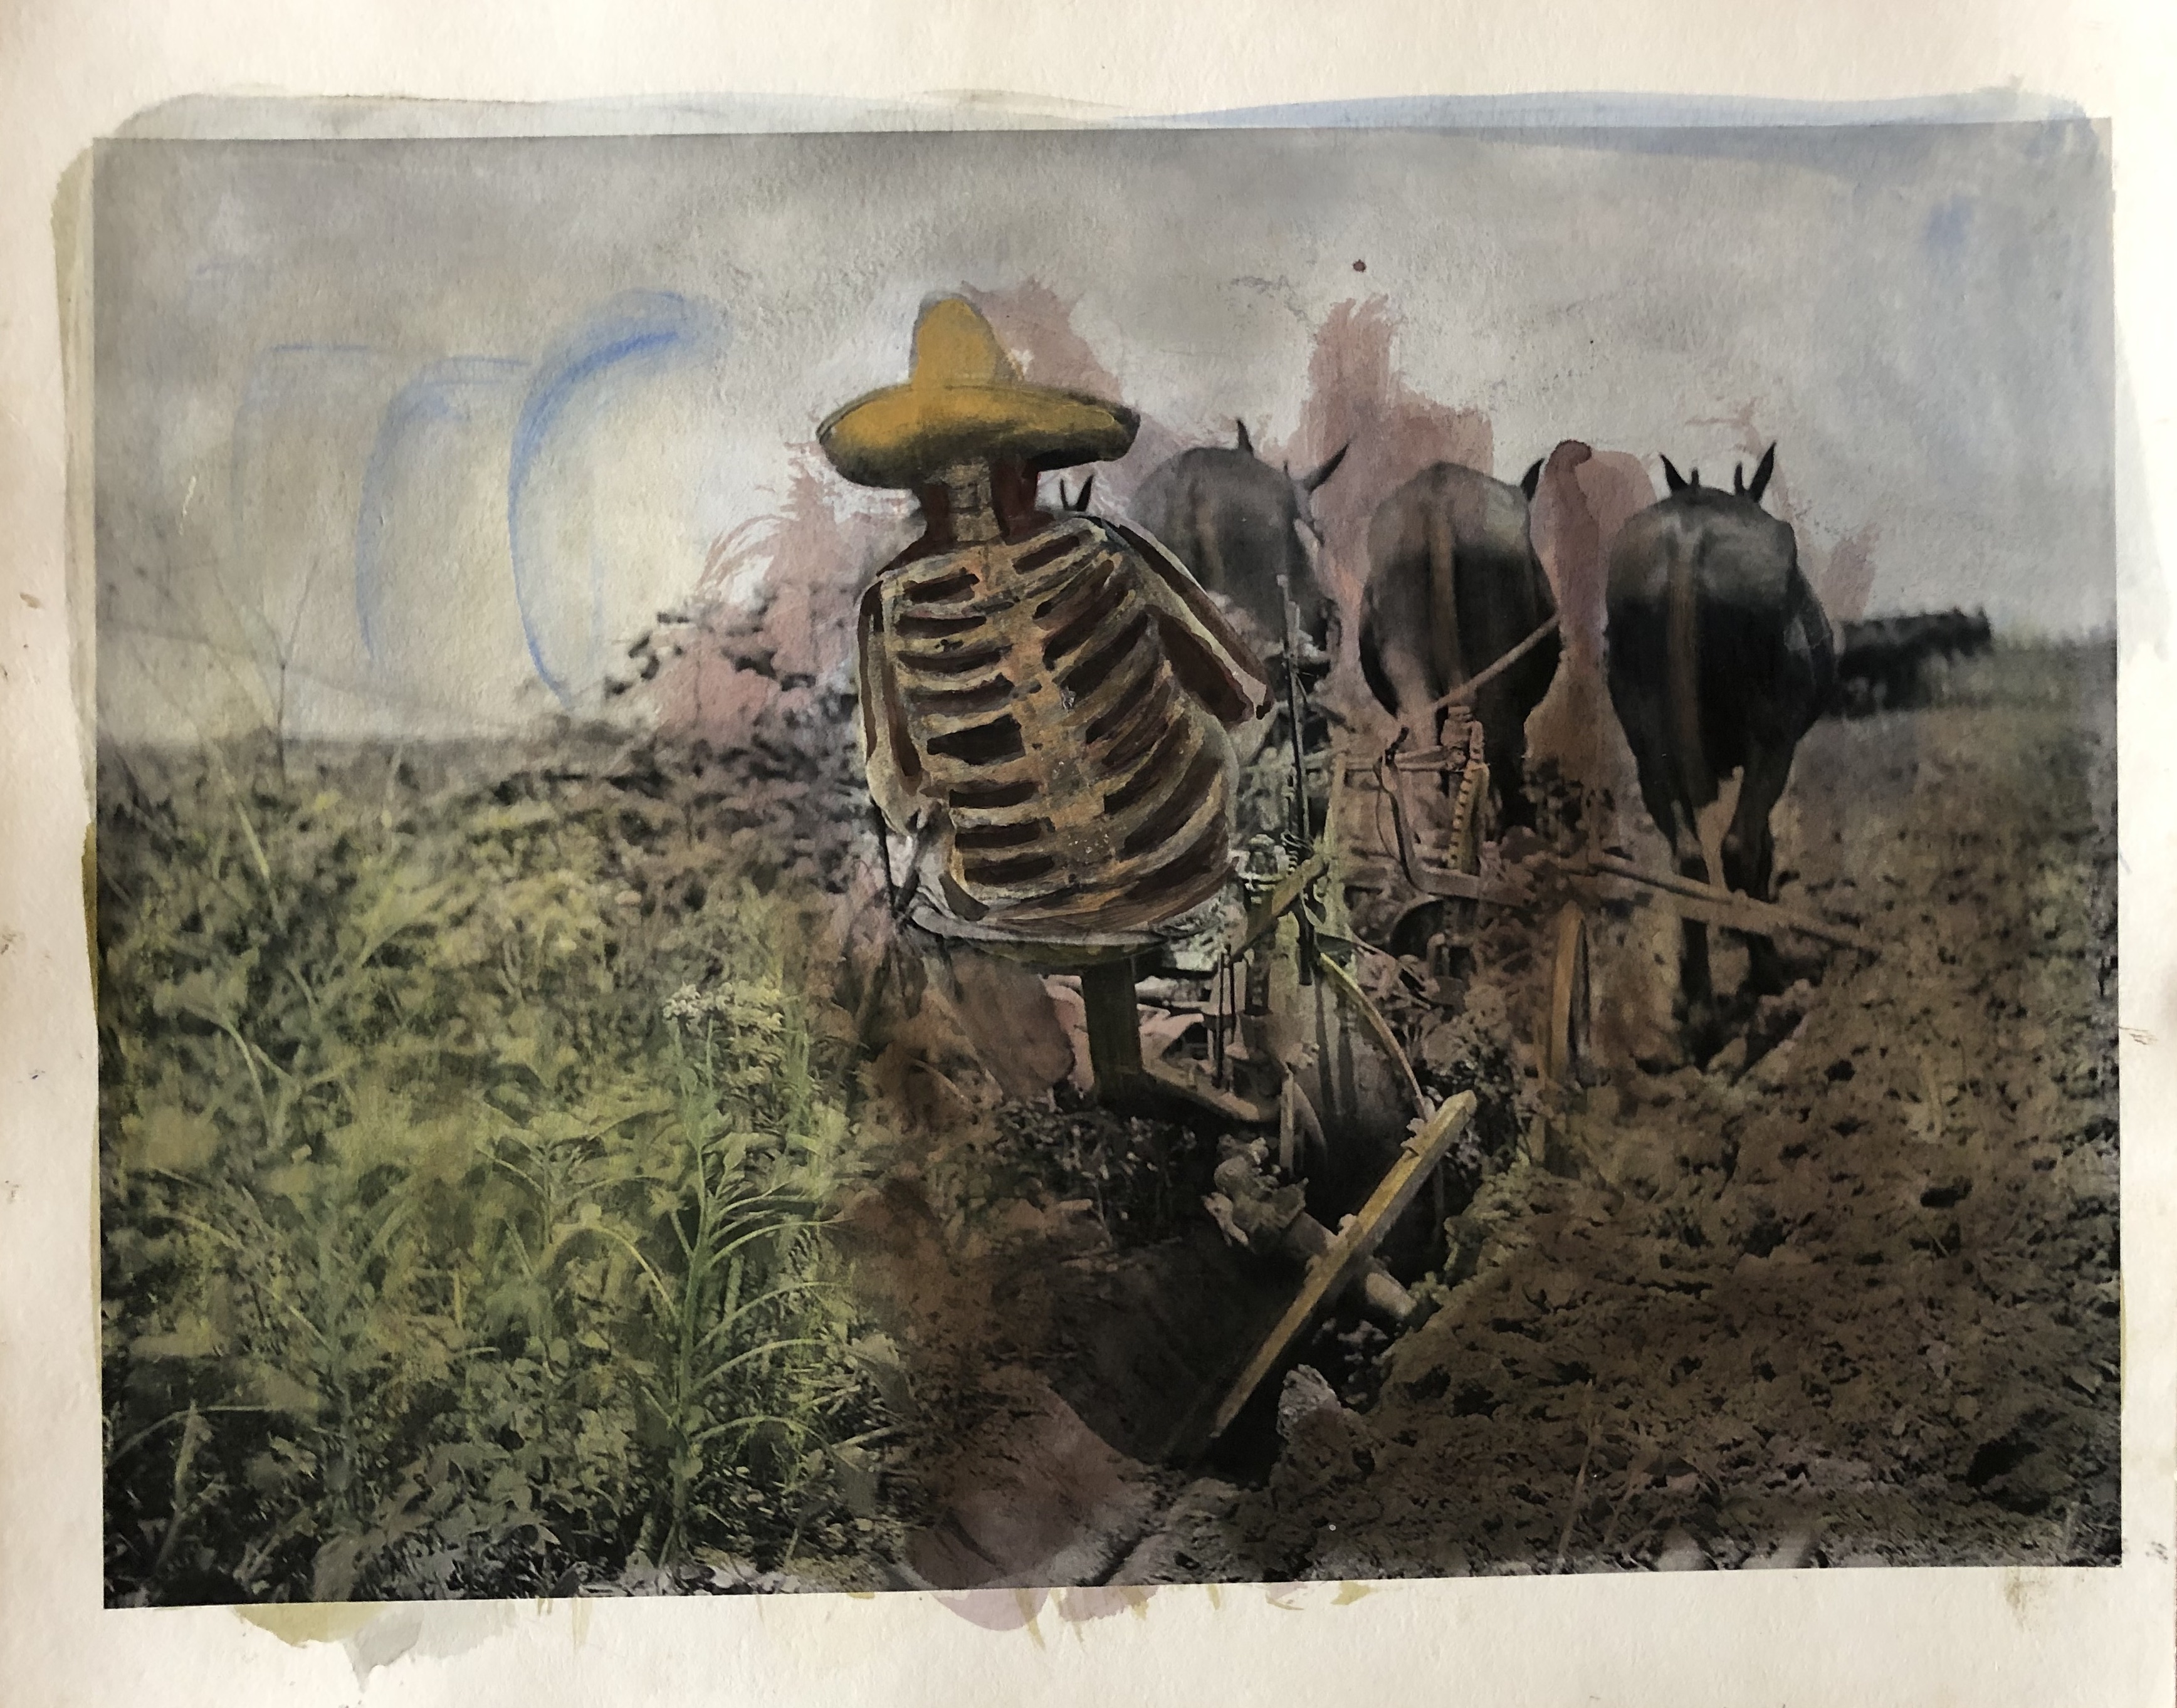 Serie El maíz de nuestro sustento | Lu' Biaani: Francisco Toledo y la fotografía | Museo Amparo, Puebla